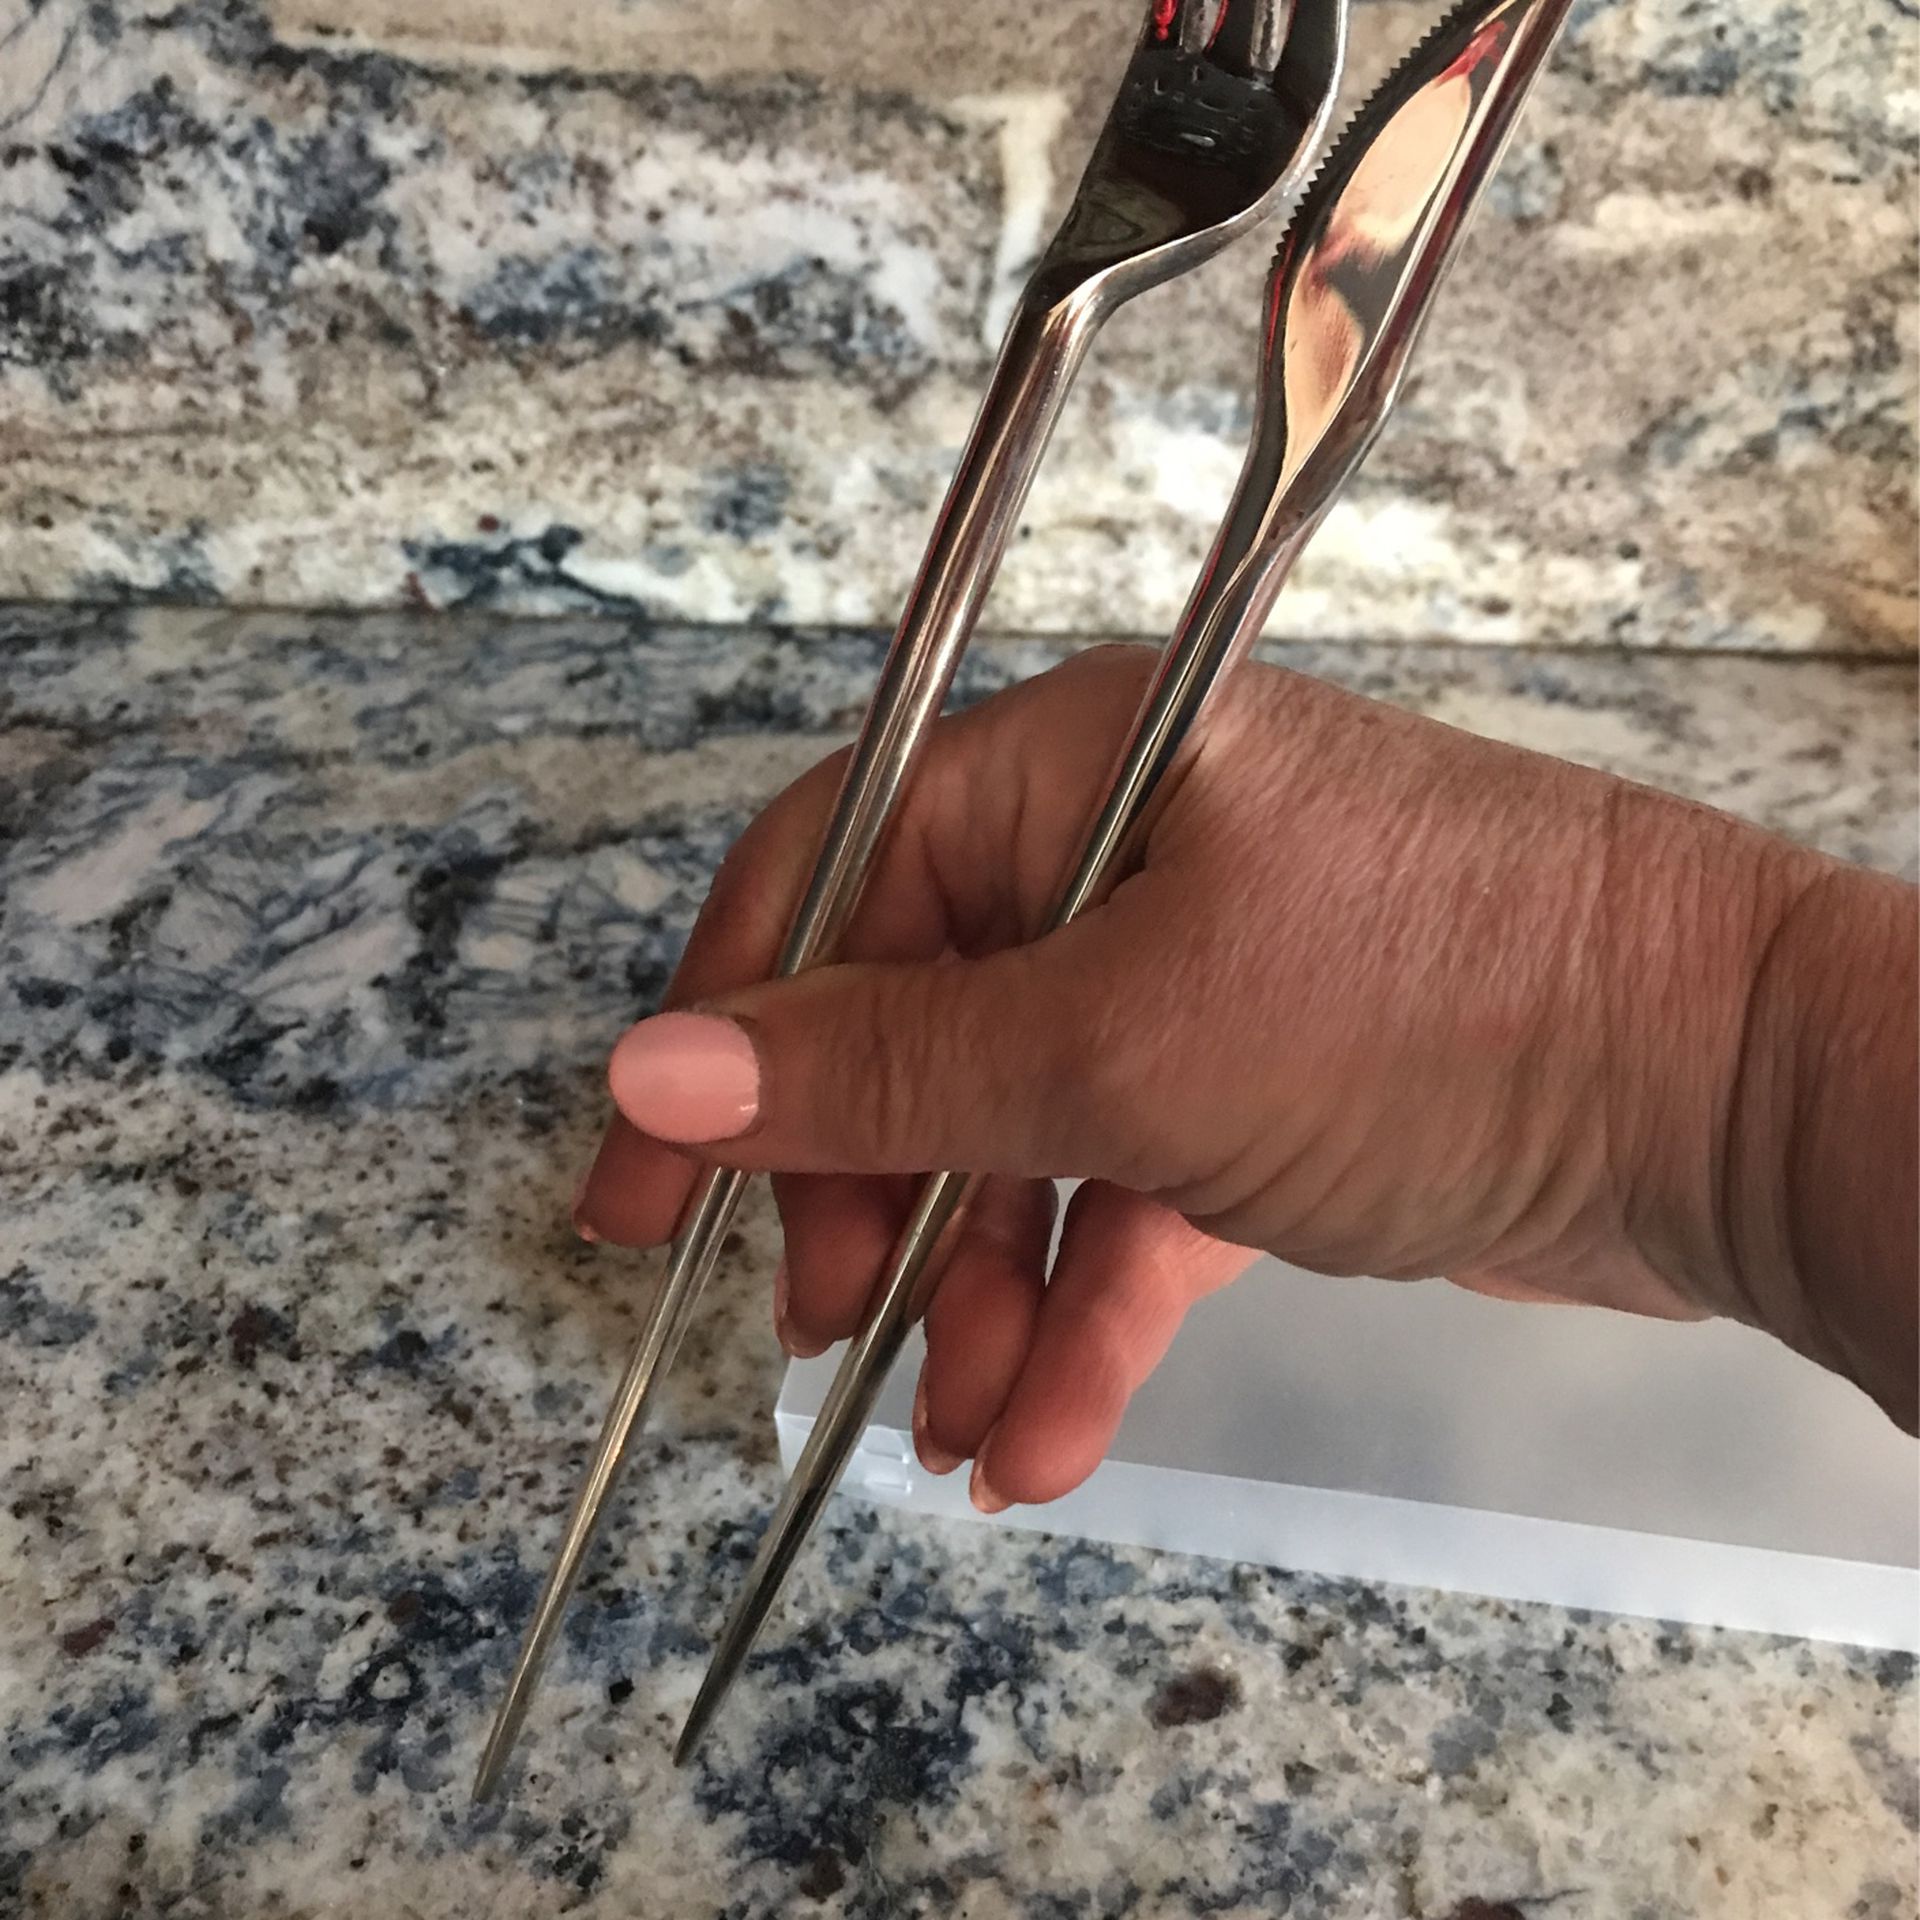 Forkchops Chopsticks -  Knife & Fork In 1 , Nice Set